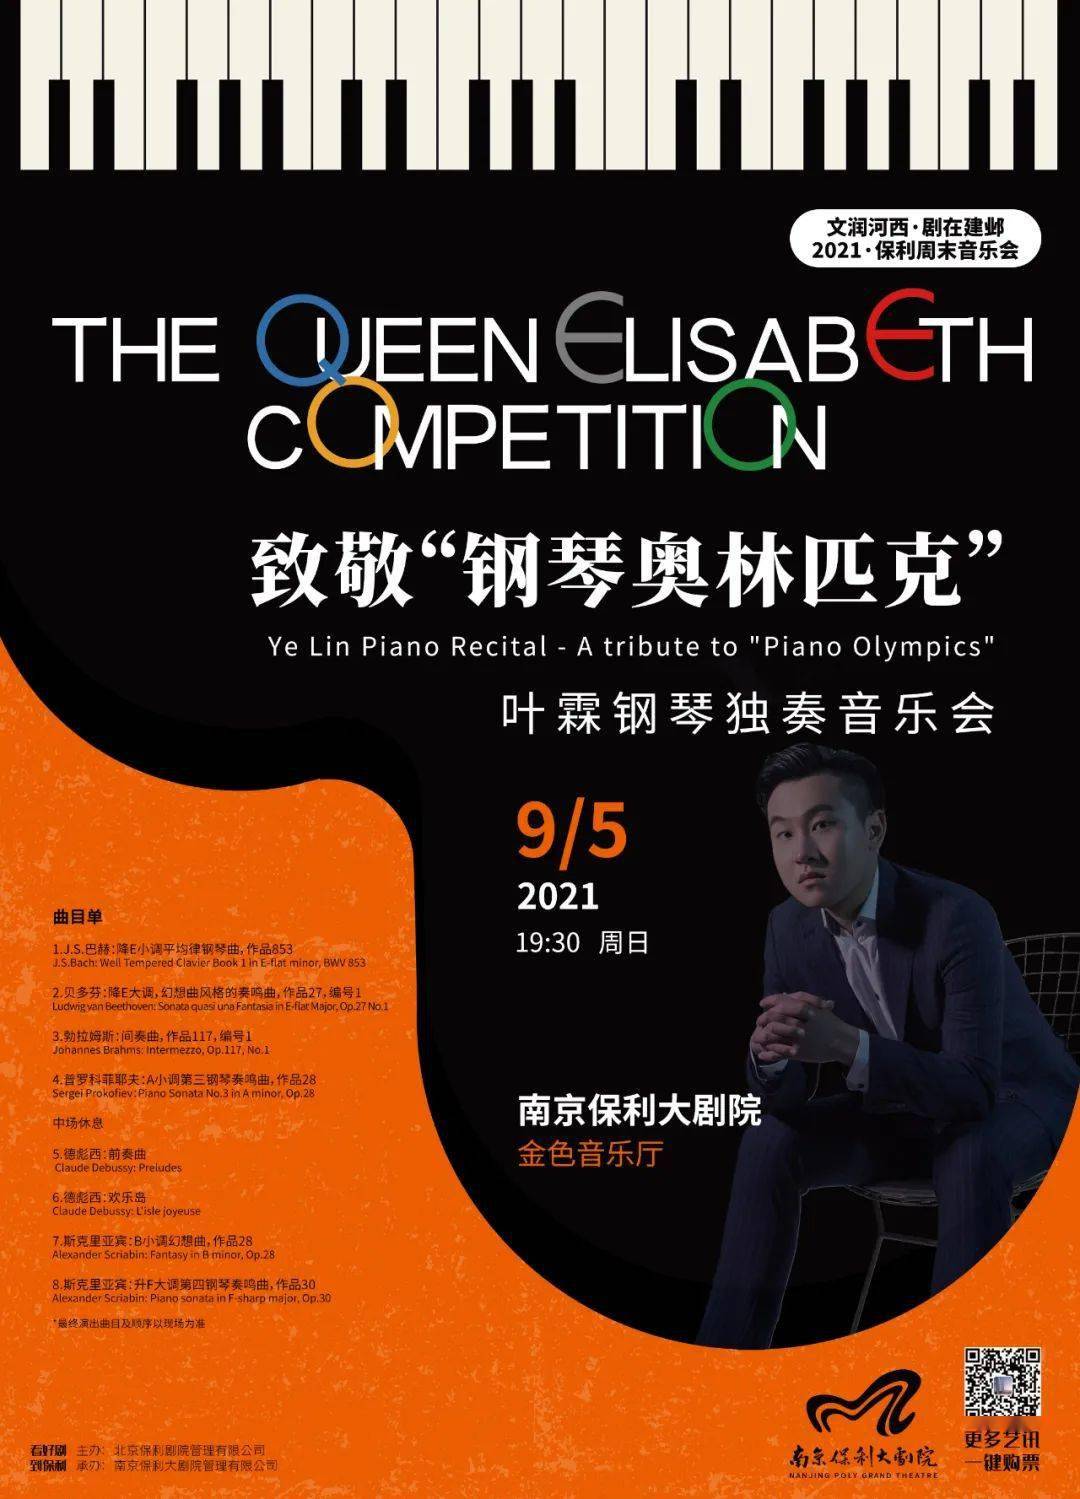 国际大赛获奖钢琴家,这两场钢琴独奏音乐会不容错过!